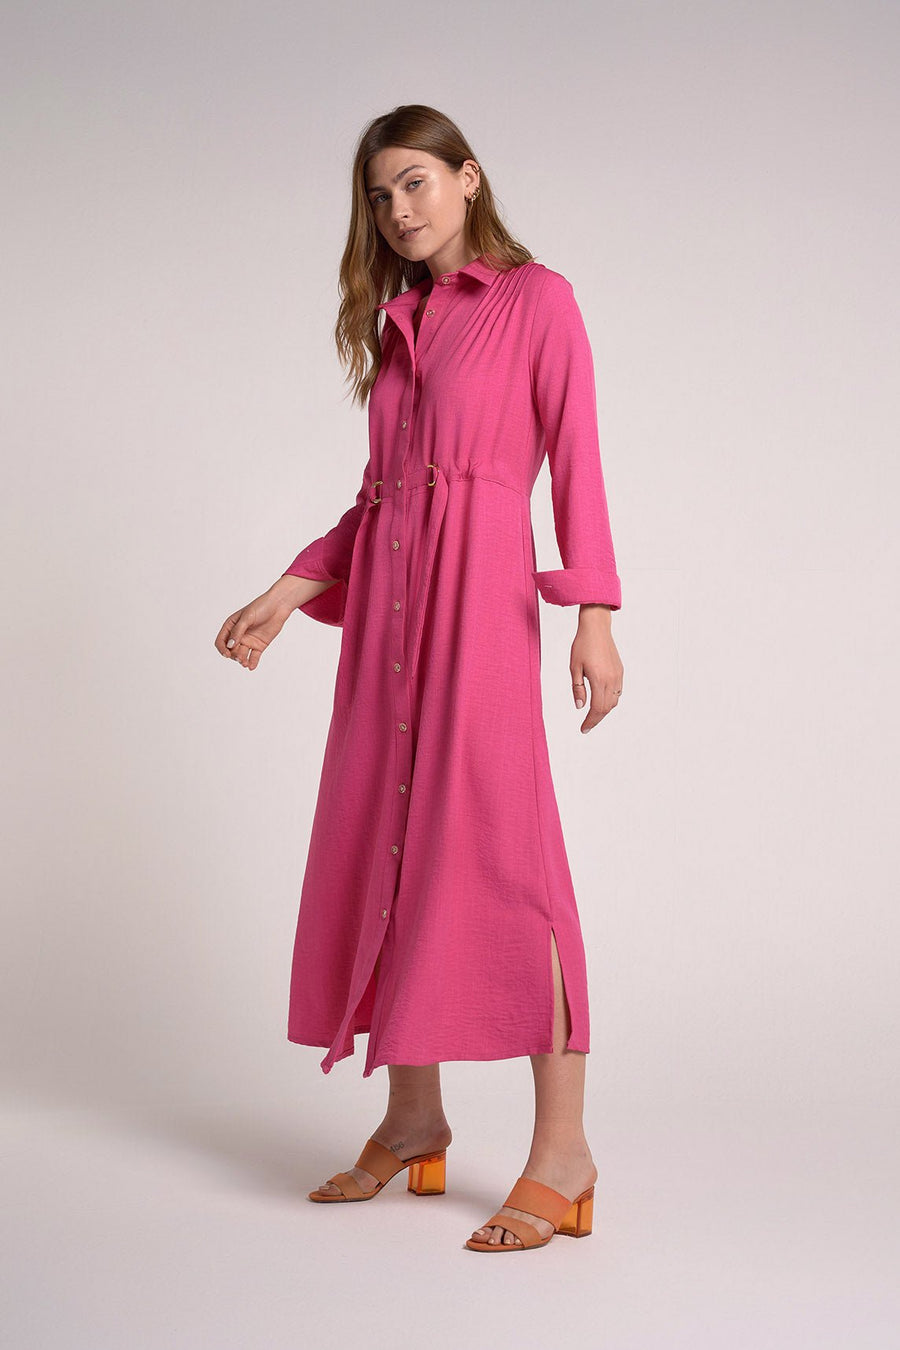 Hot pink shirt dress belt within - nahlaelalfydesigns